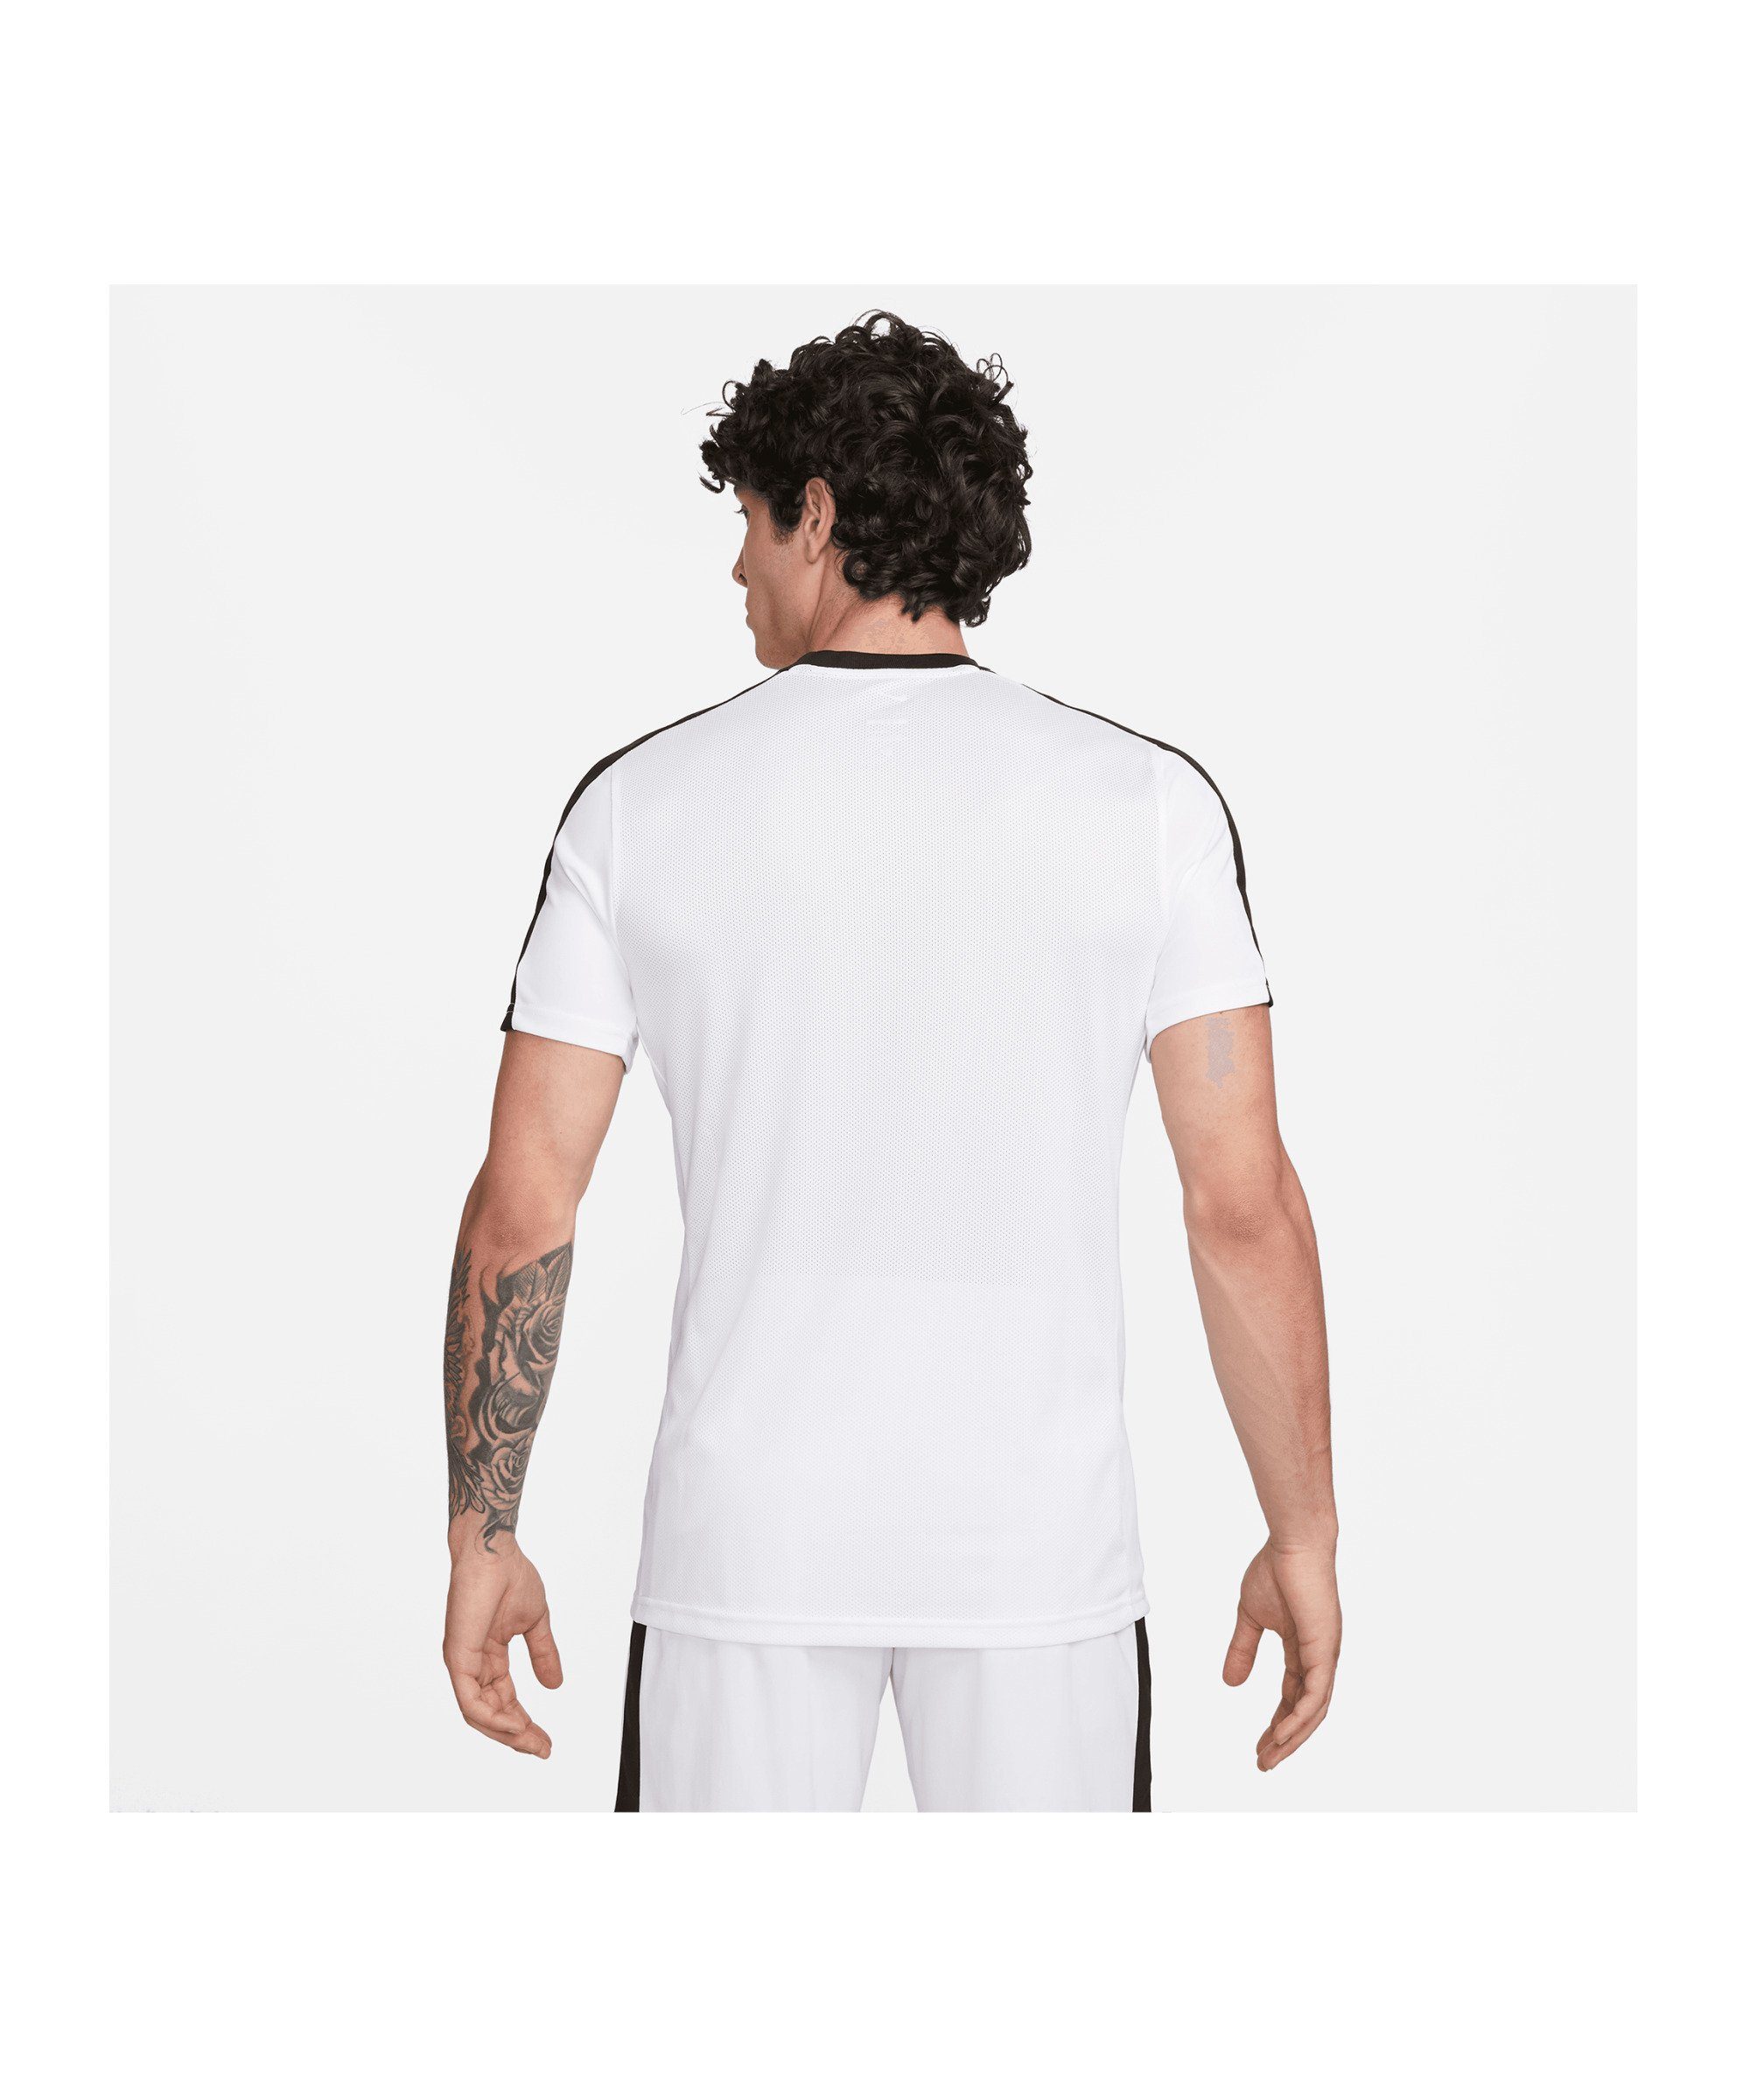 Academy default Trainingsshirt Nike weissschwarzrot T-Shirt